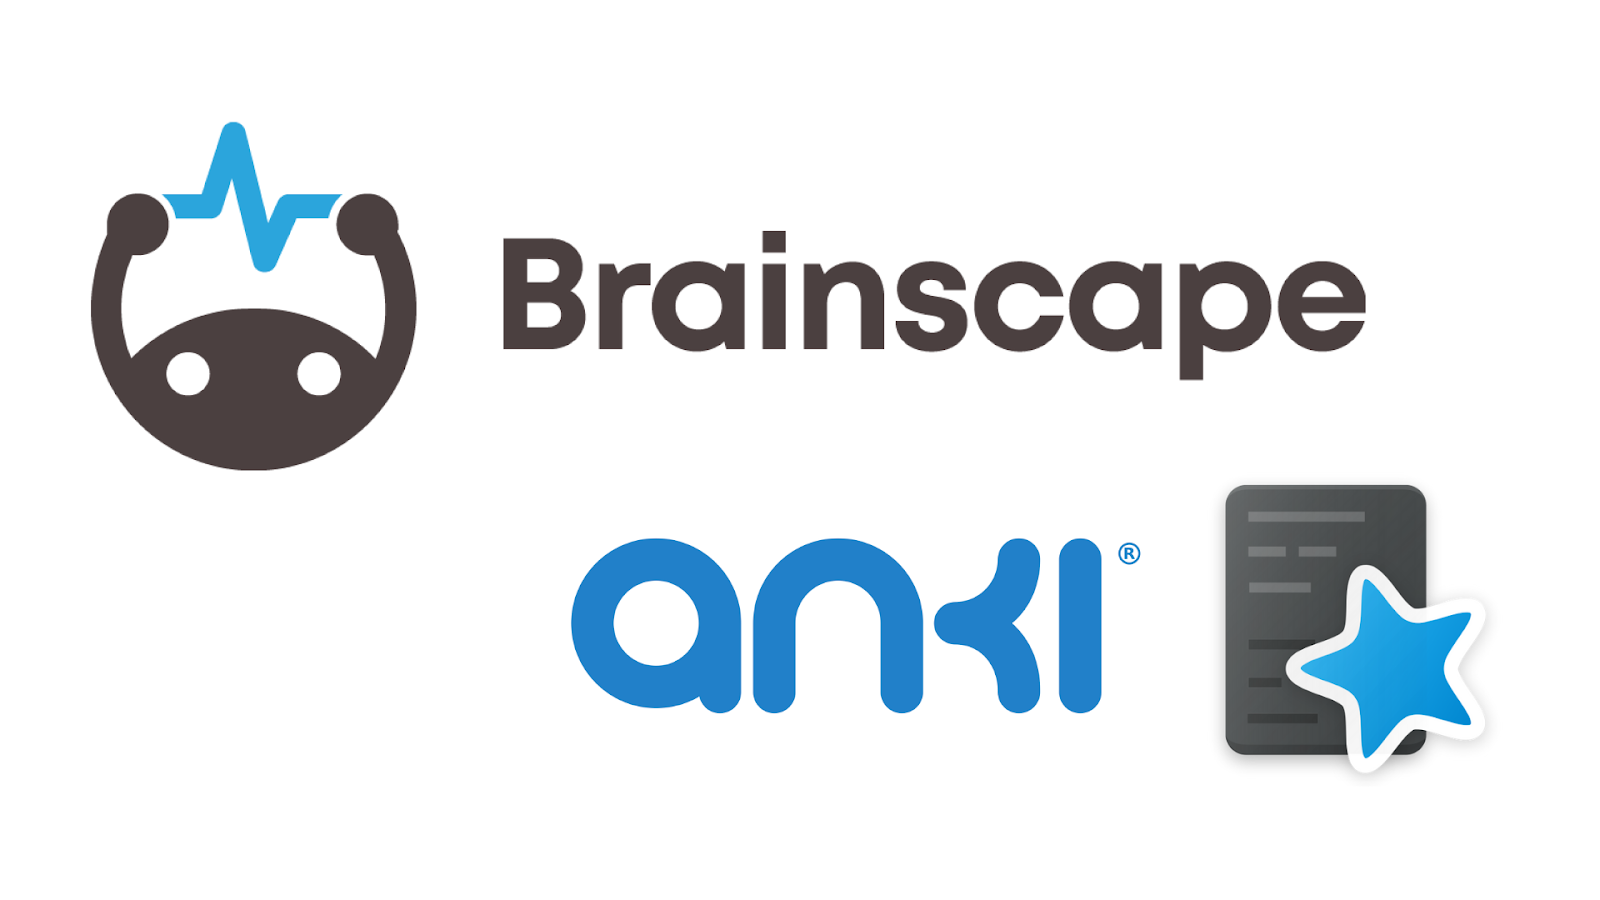 Brainscape vs Anki flashcard apps